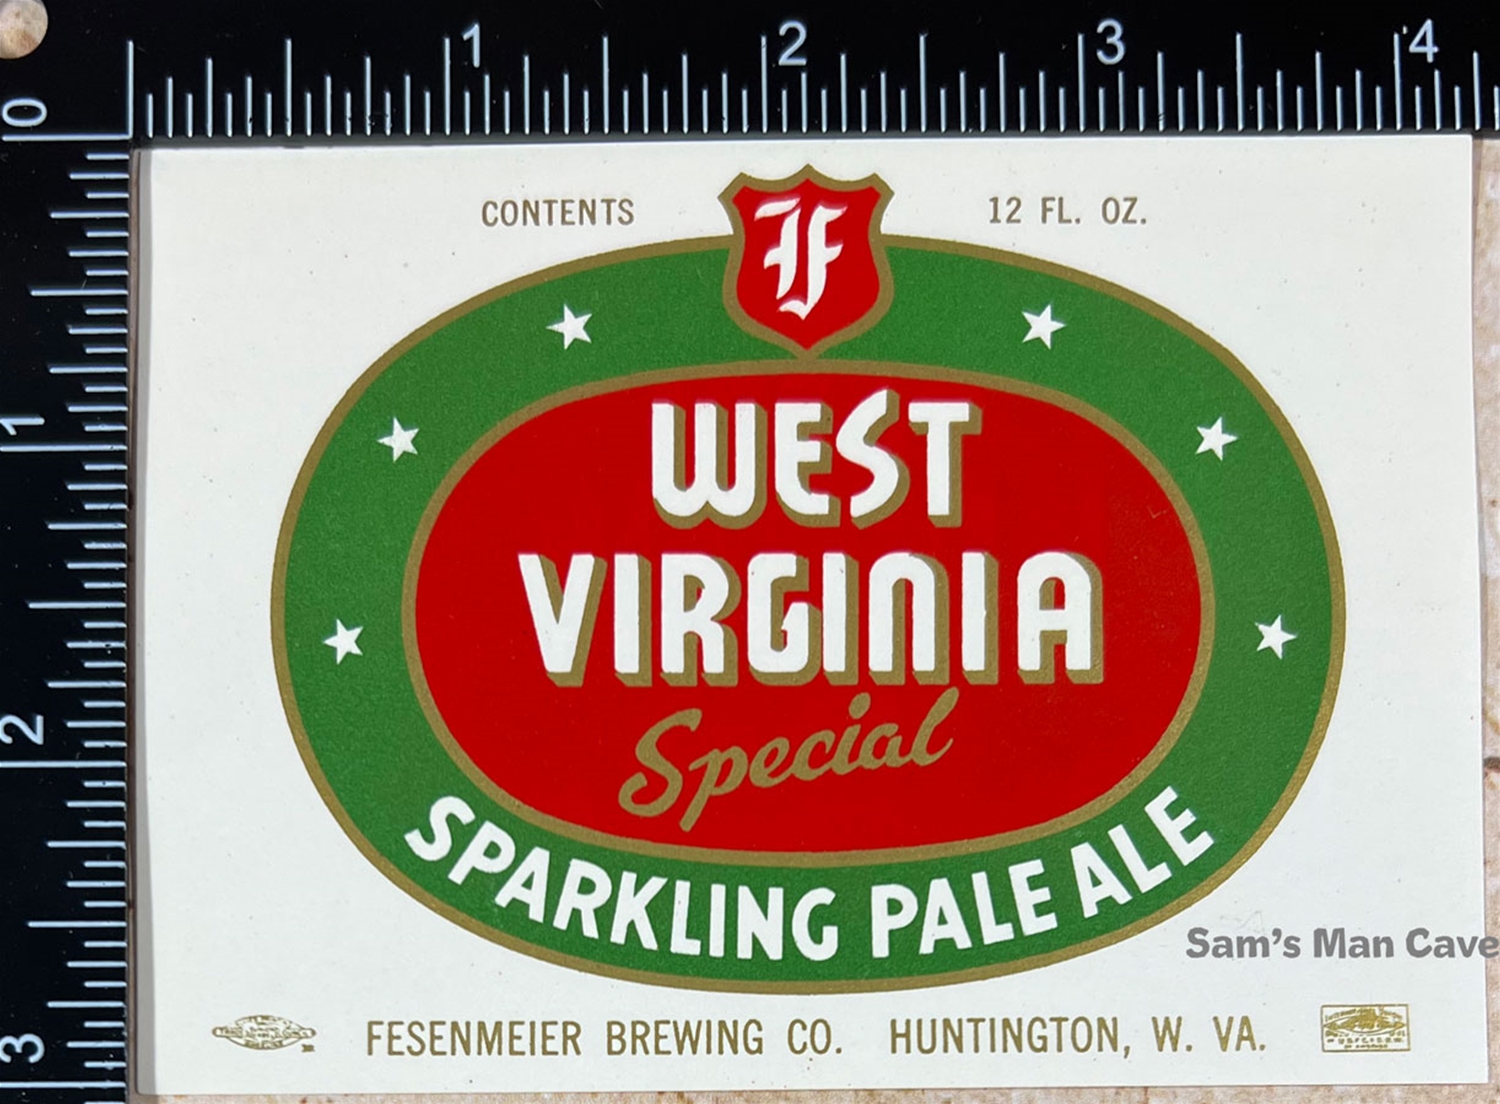 West Virginia Special Sparkling Ale Beer Label